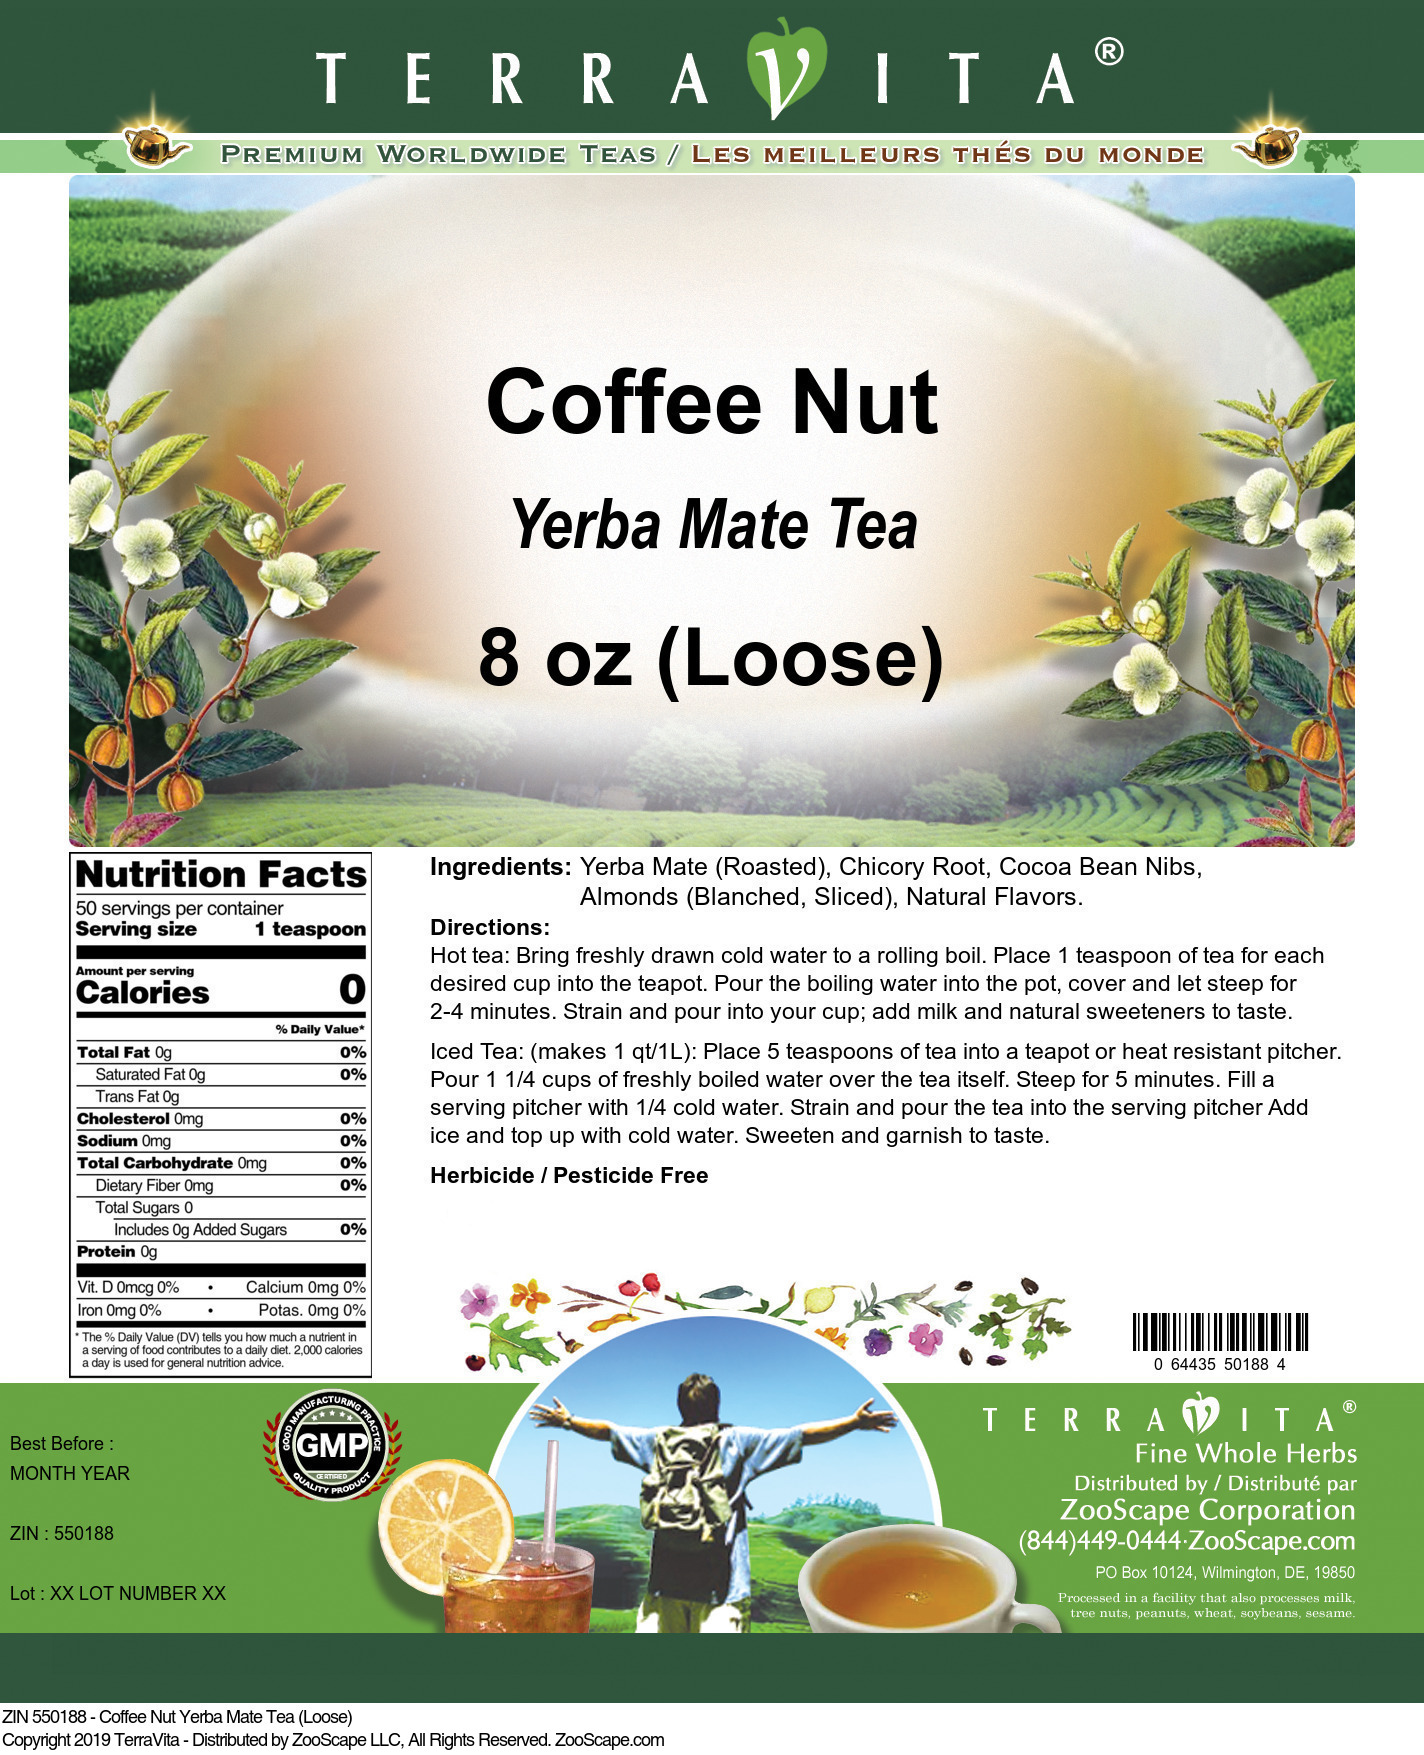 Coffee Nut Yerba Mate Tea (Loose) - Label